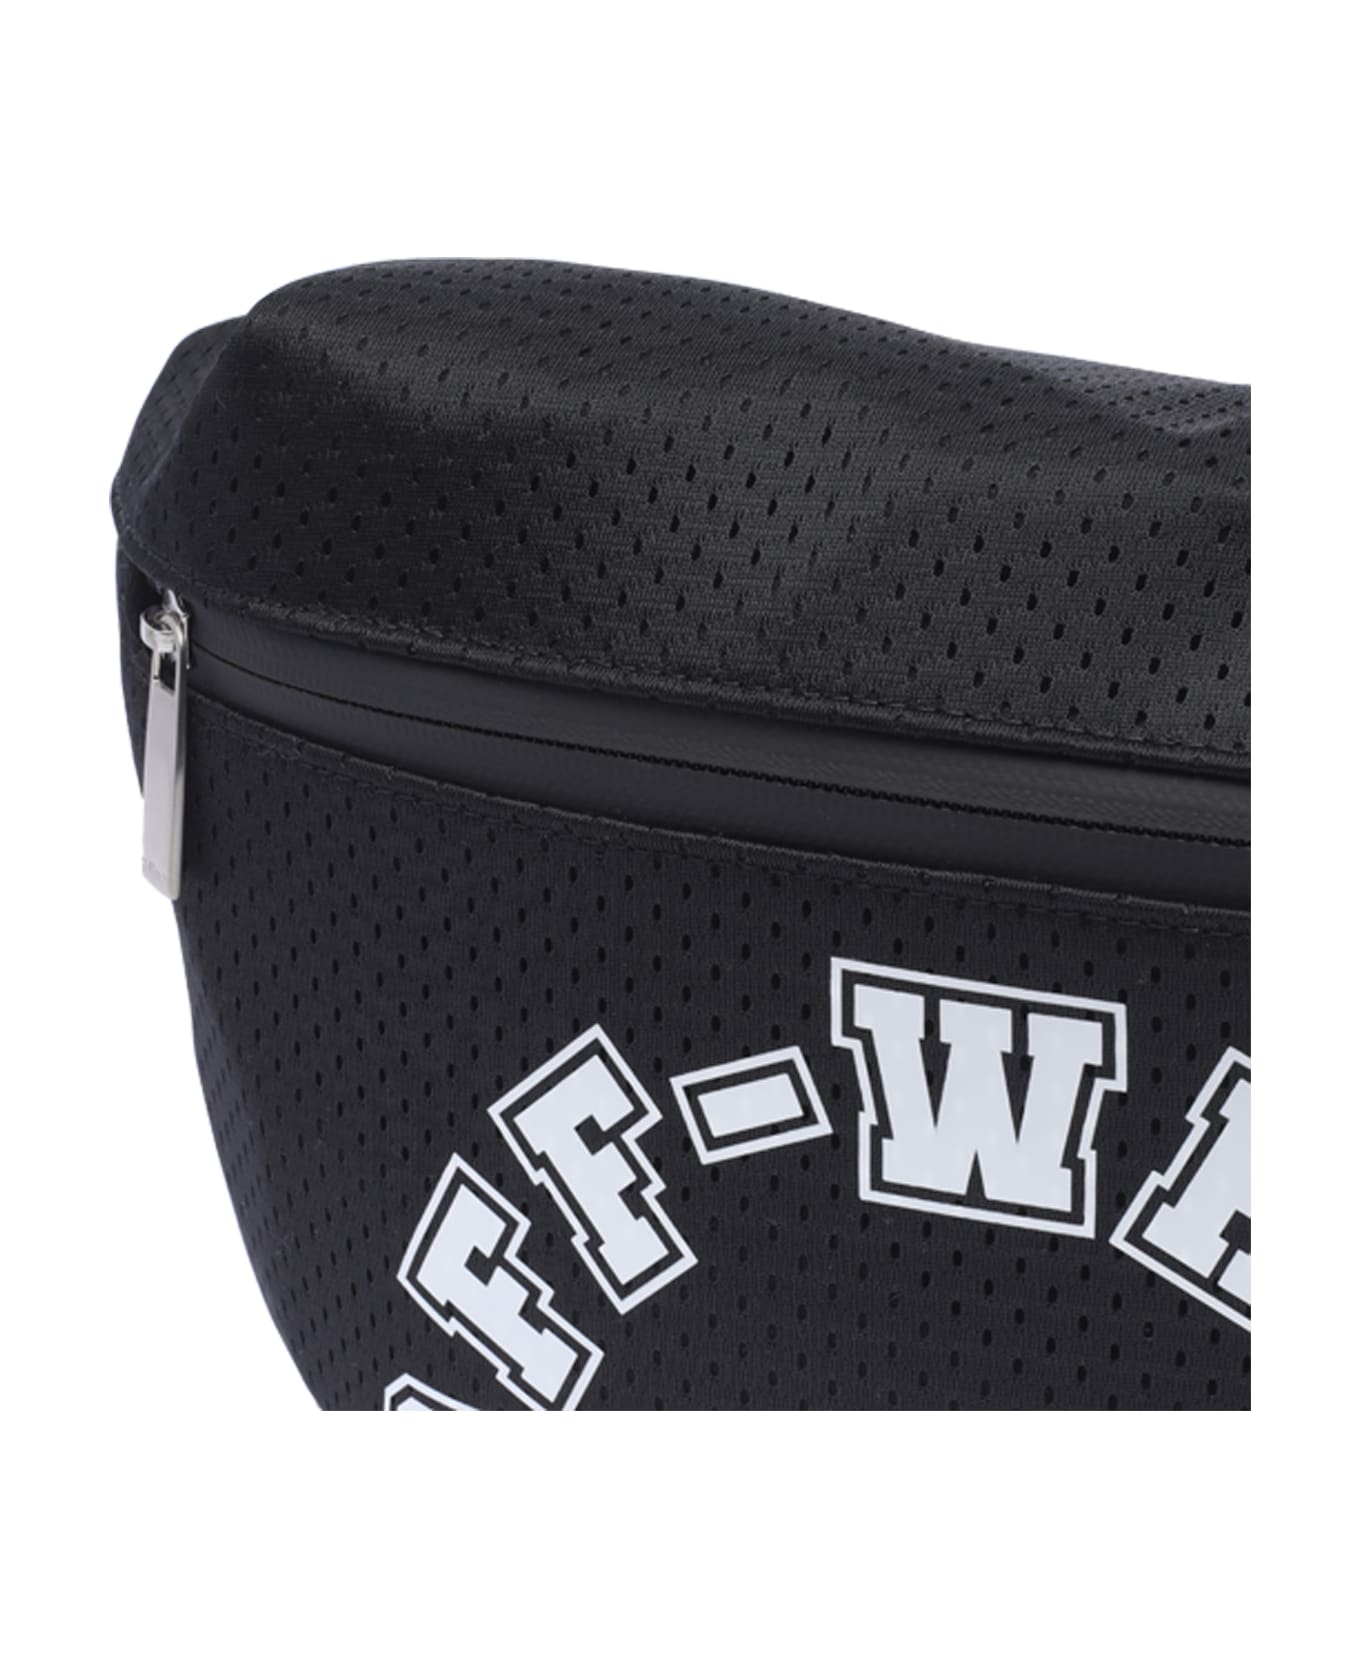 Off-White Outdoor Waistbag Baseball - Black White ベルトバッグ